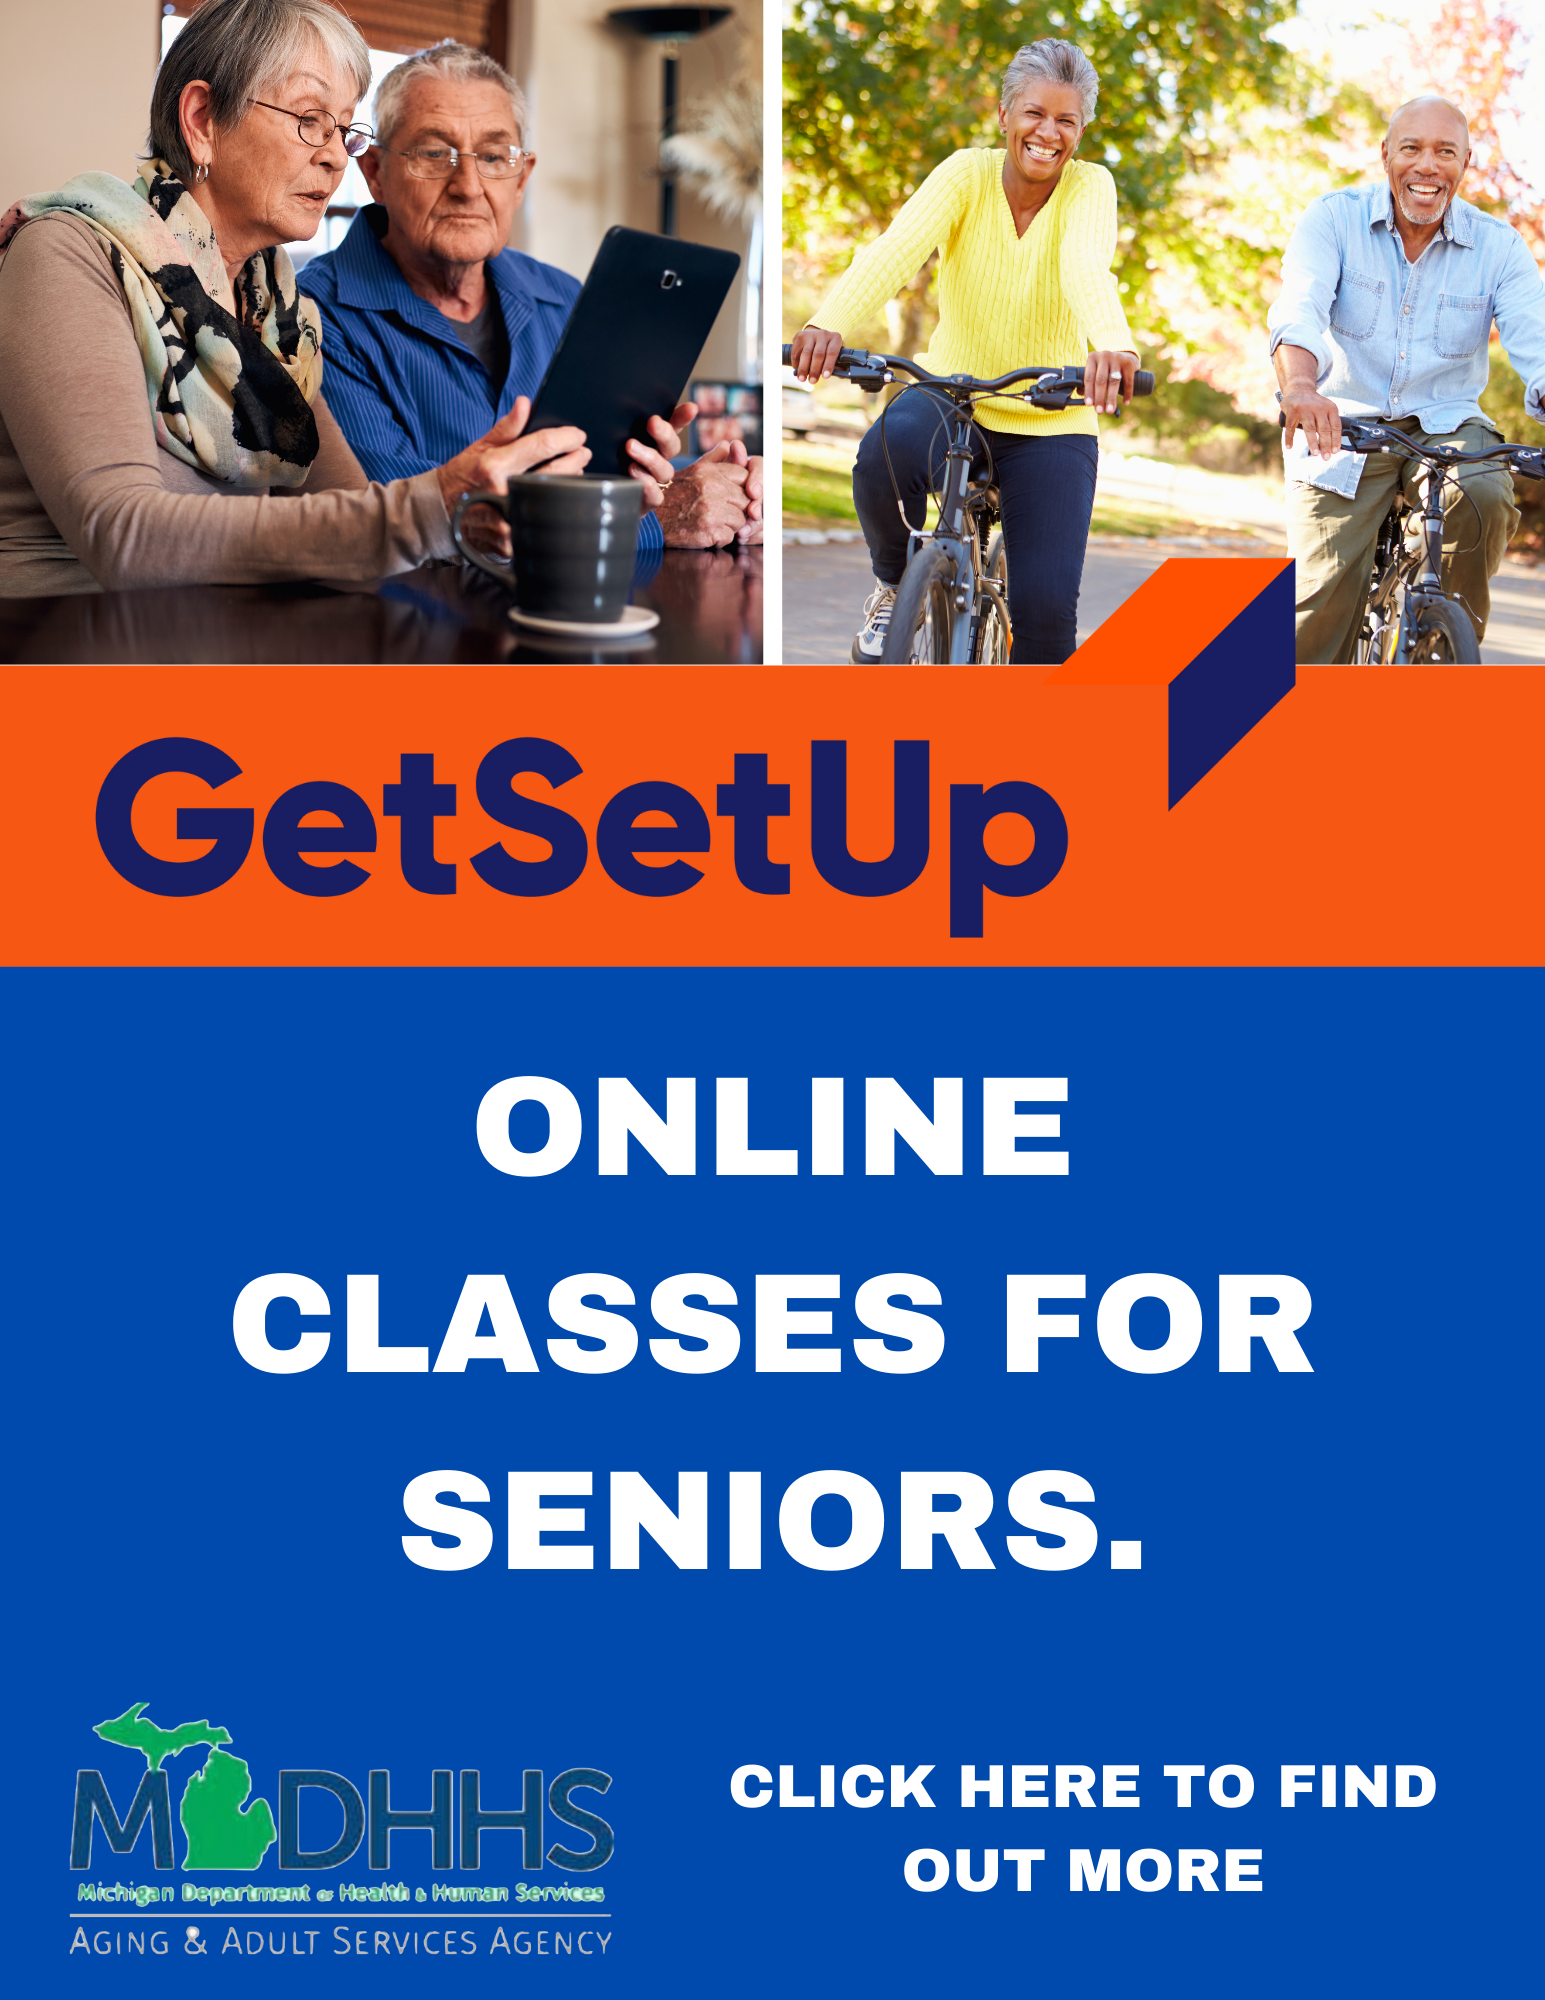 GetSetUp Senior Learning Icon Link